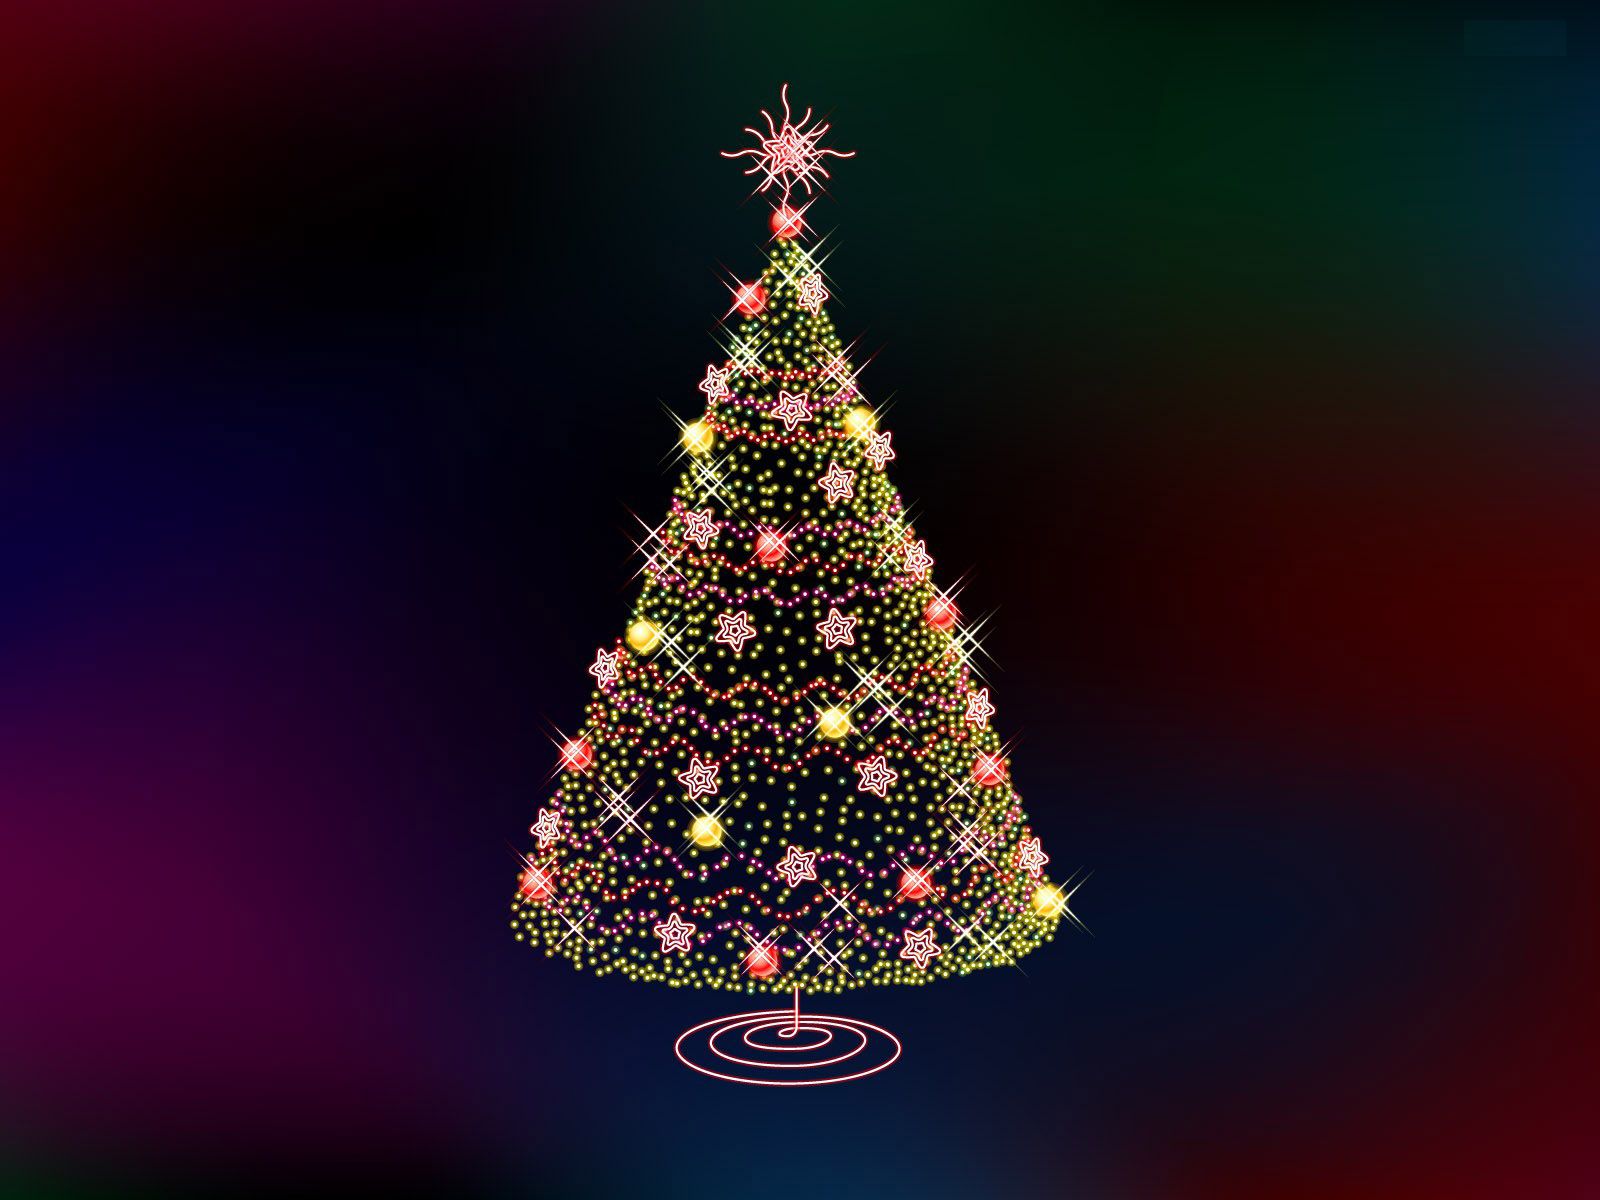 Christmas Tree Lights Papel De Parede Imagem